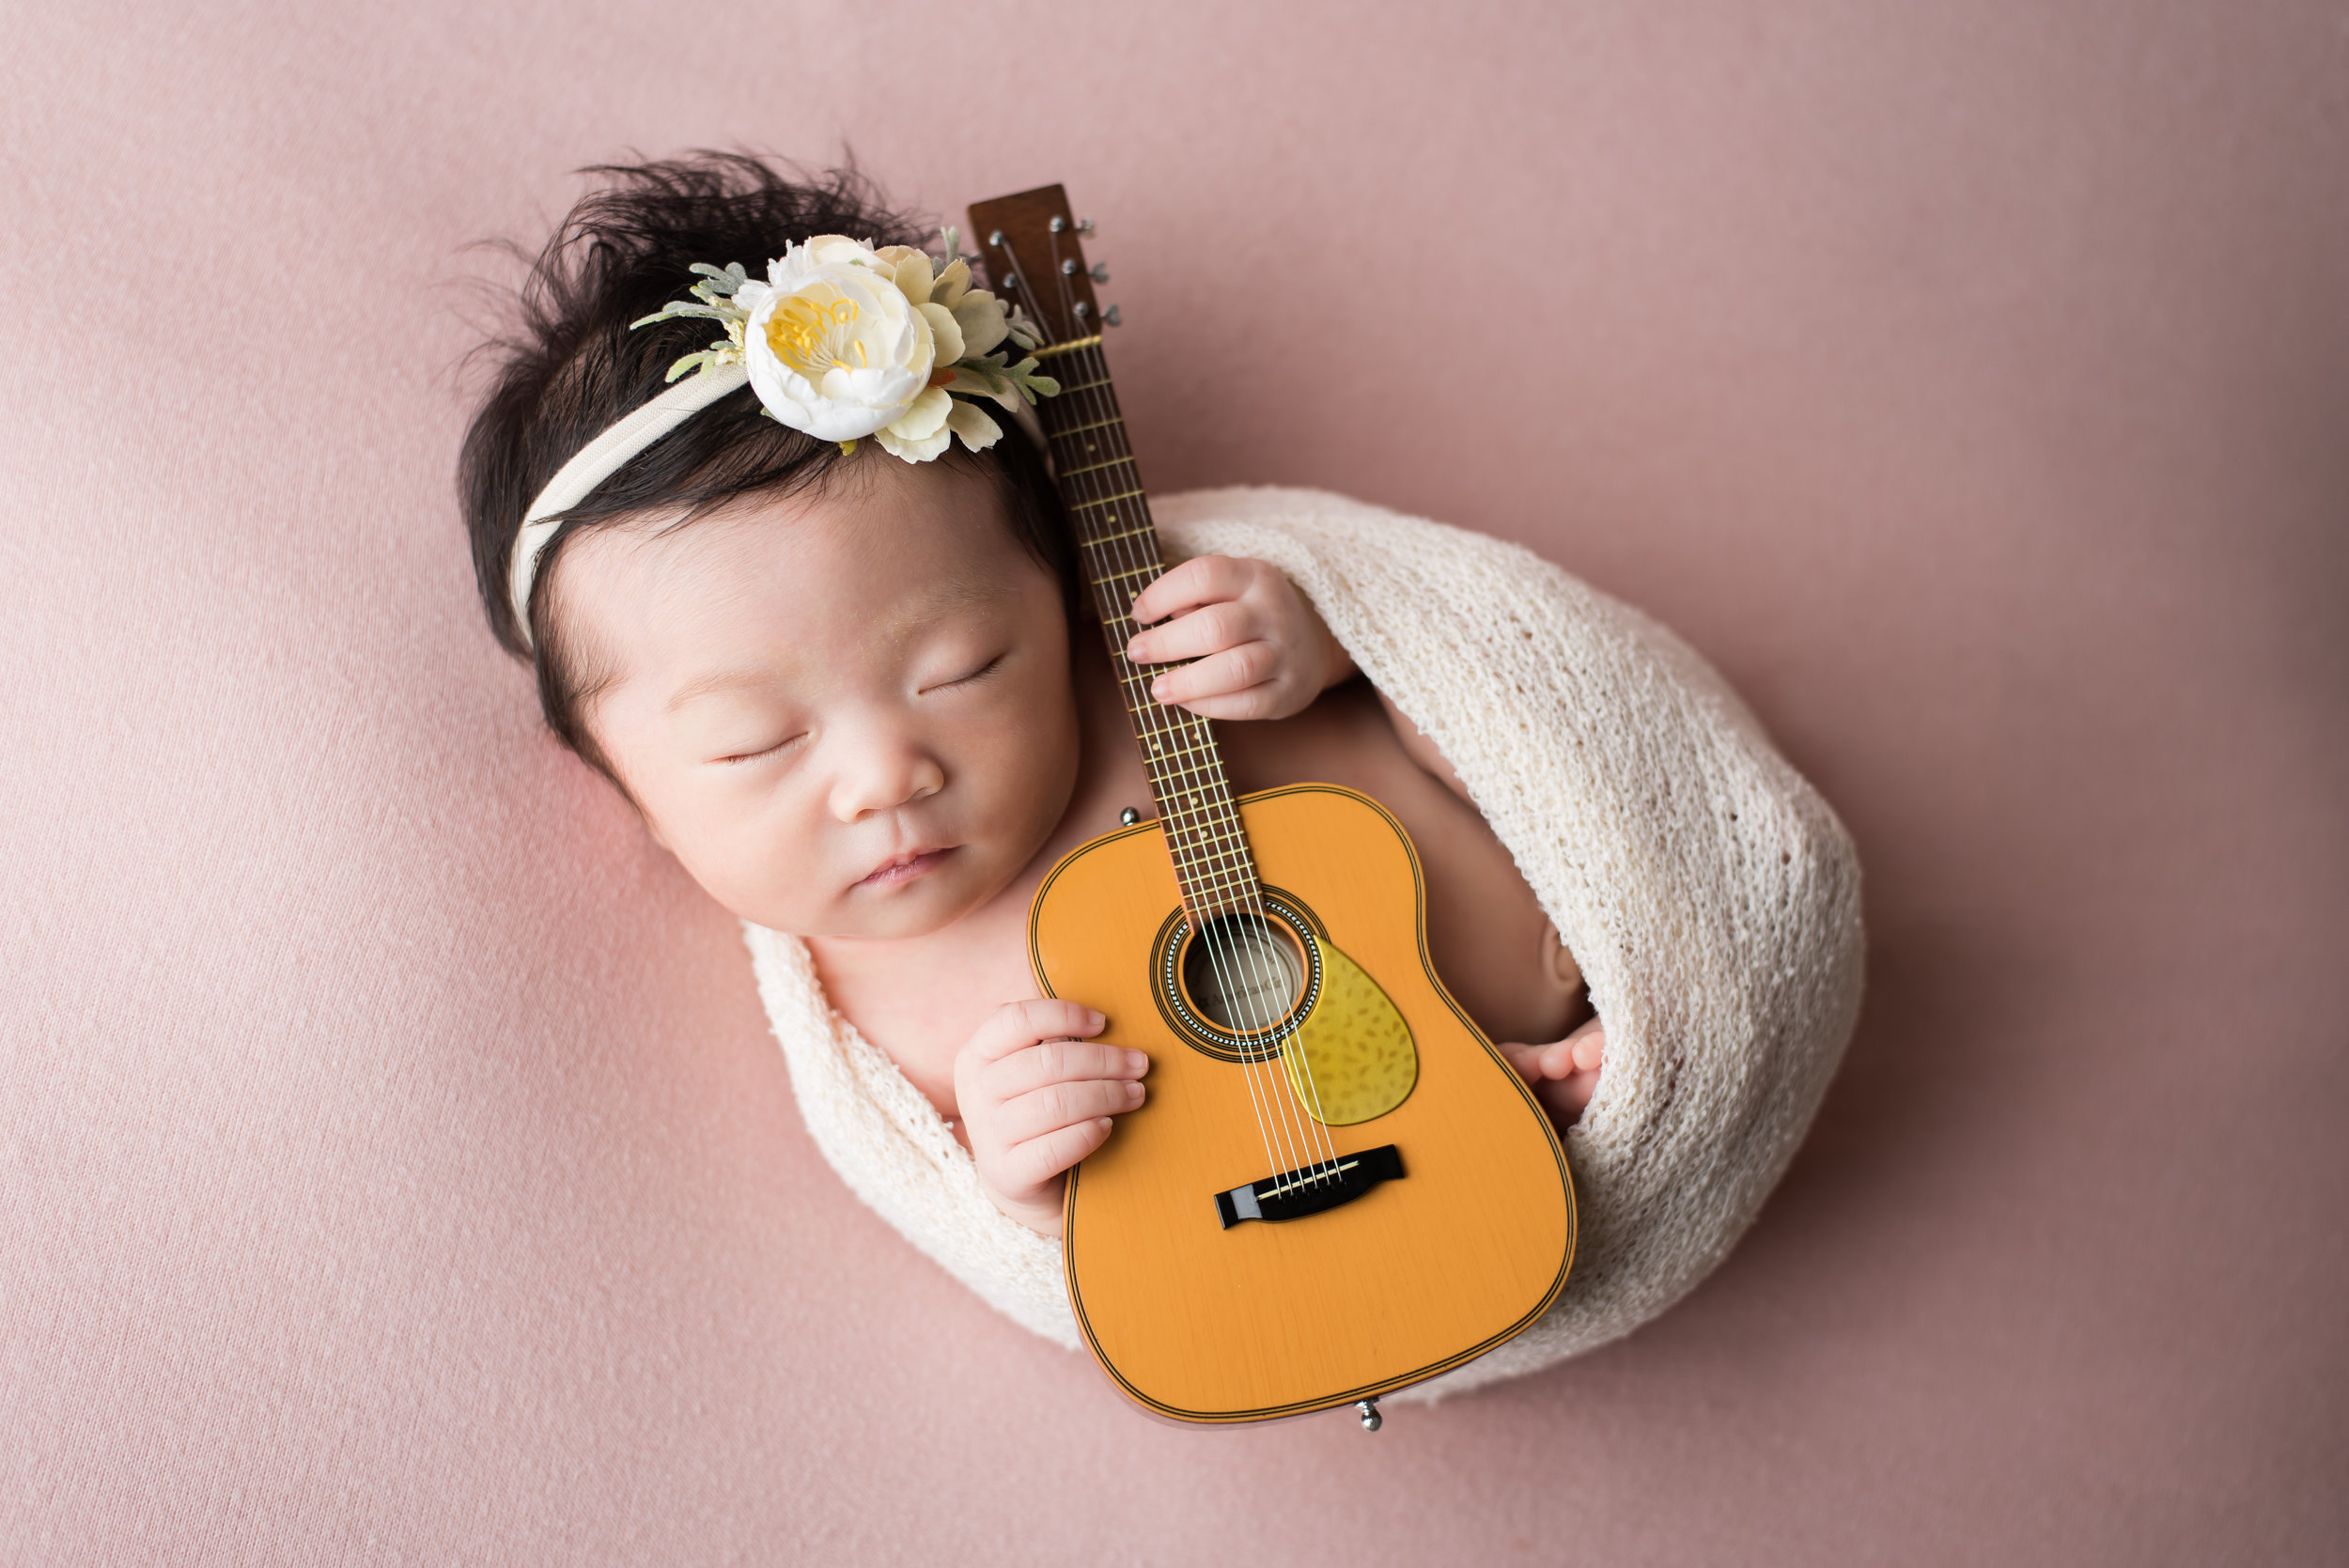 Newborn guitar photo